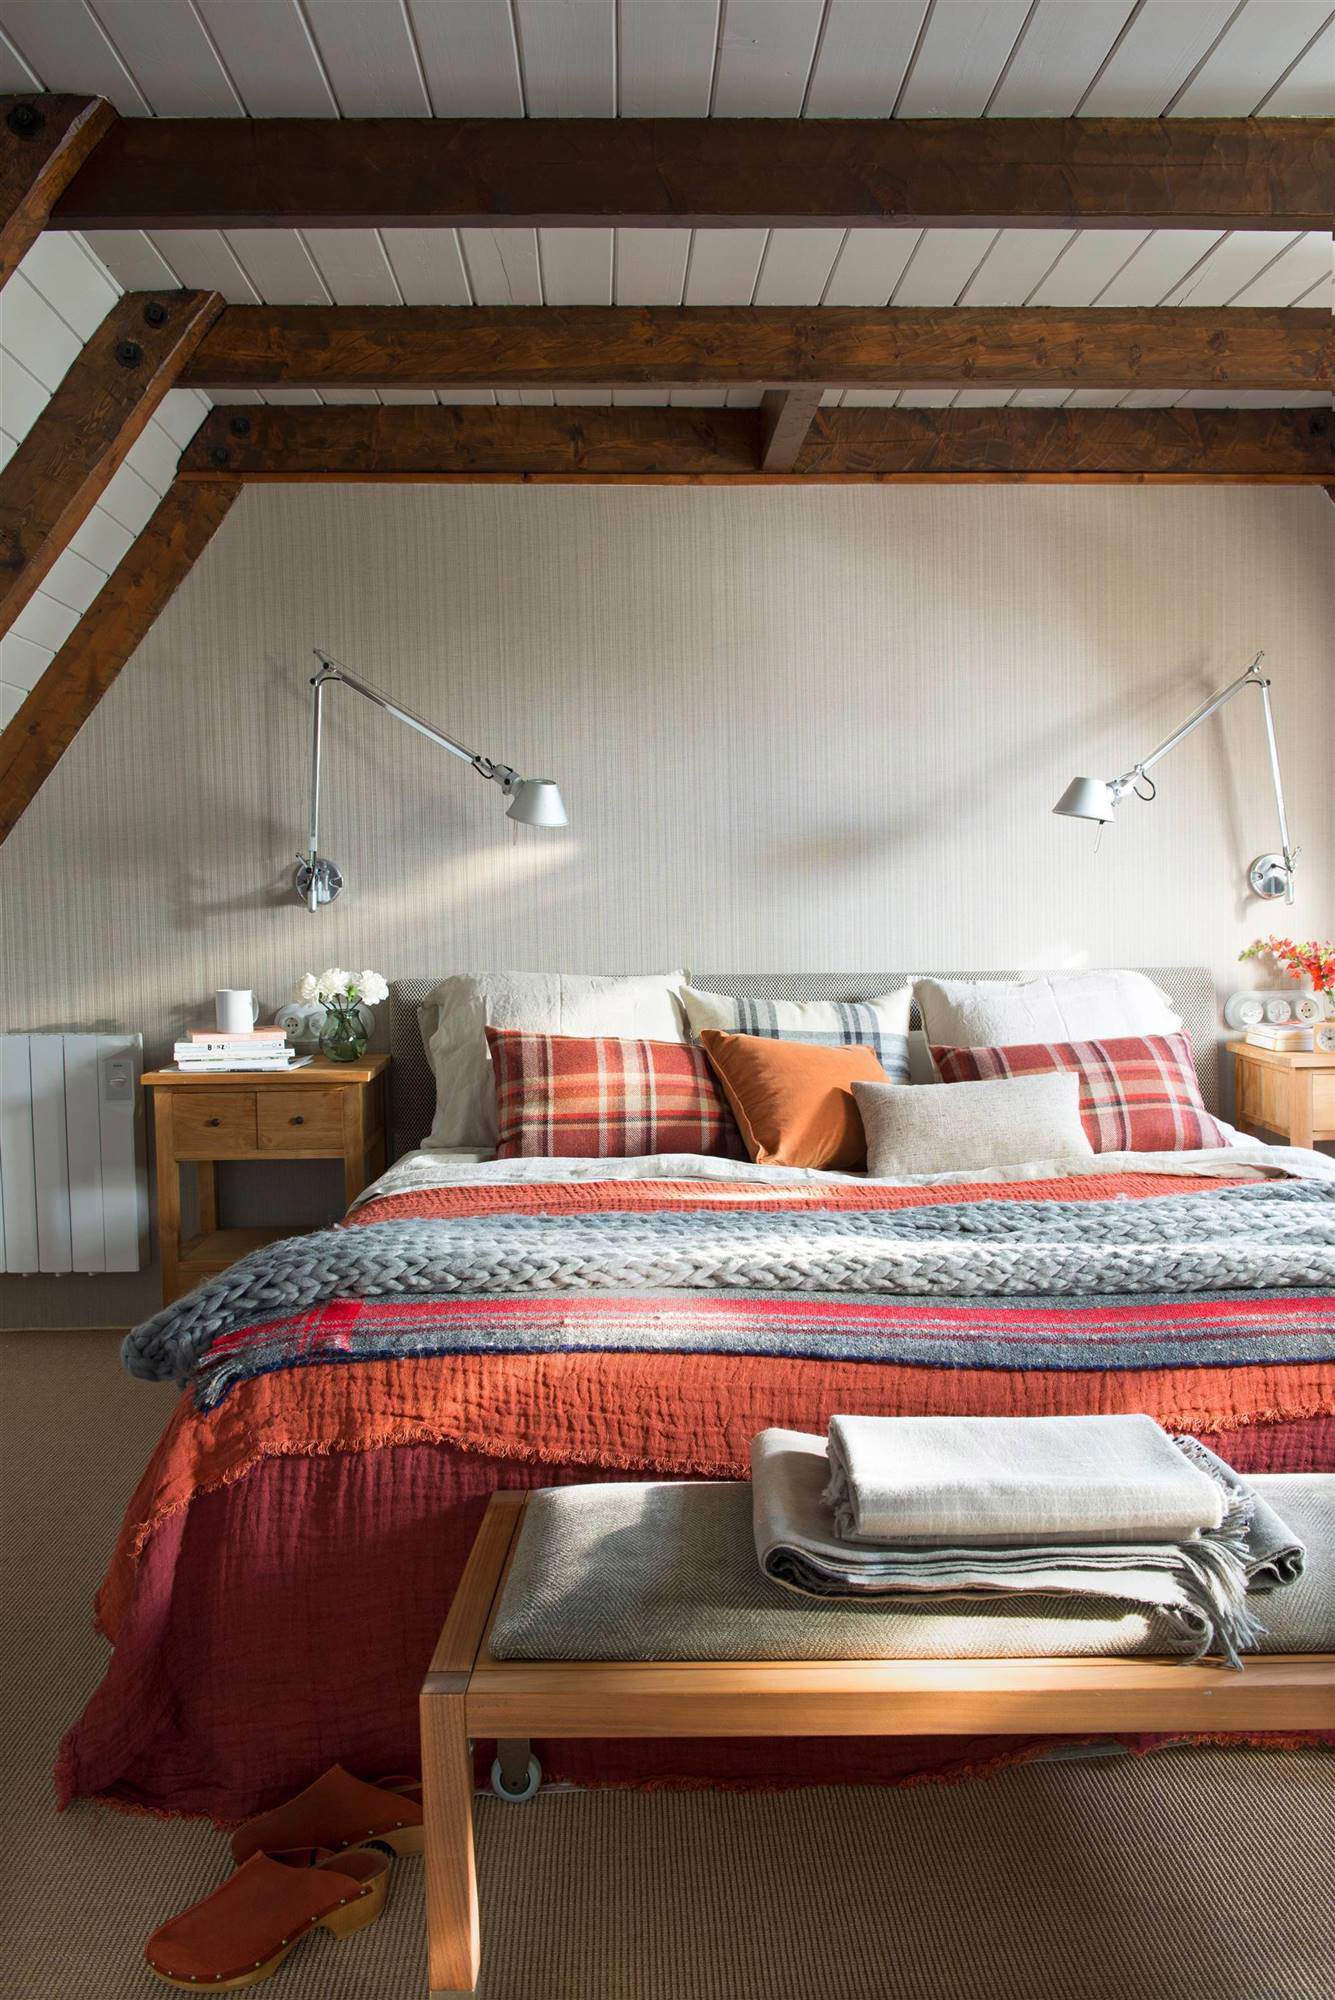 Dormitorio con vigas de madera a ala vista, y ropa de cama en granate y gris.